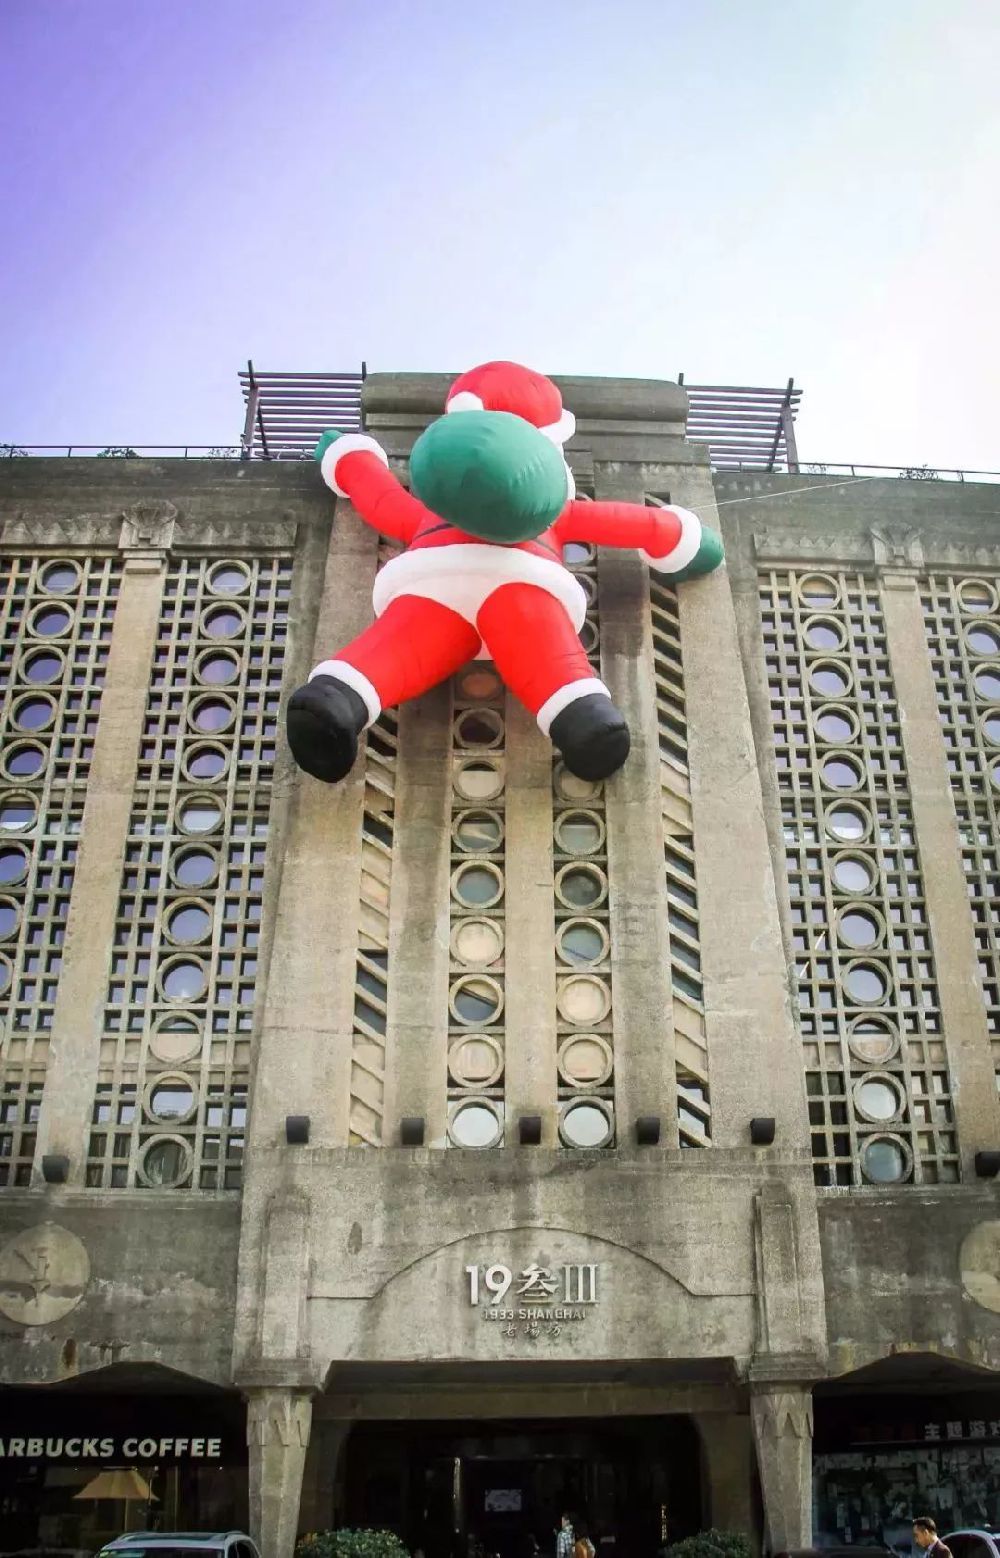 魔都圣诞新打卡地诞生 8米巨型爬墙圣诞老人亮相